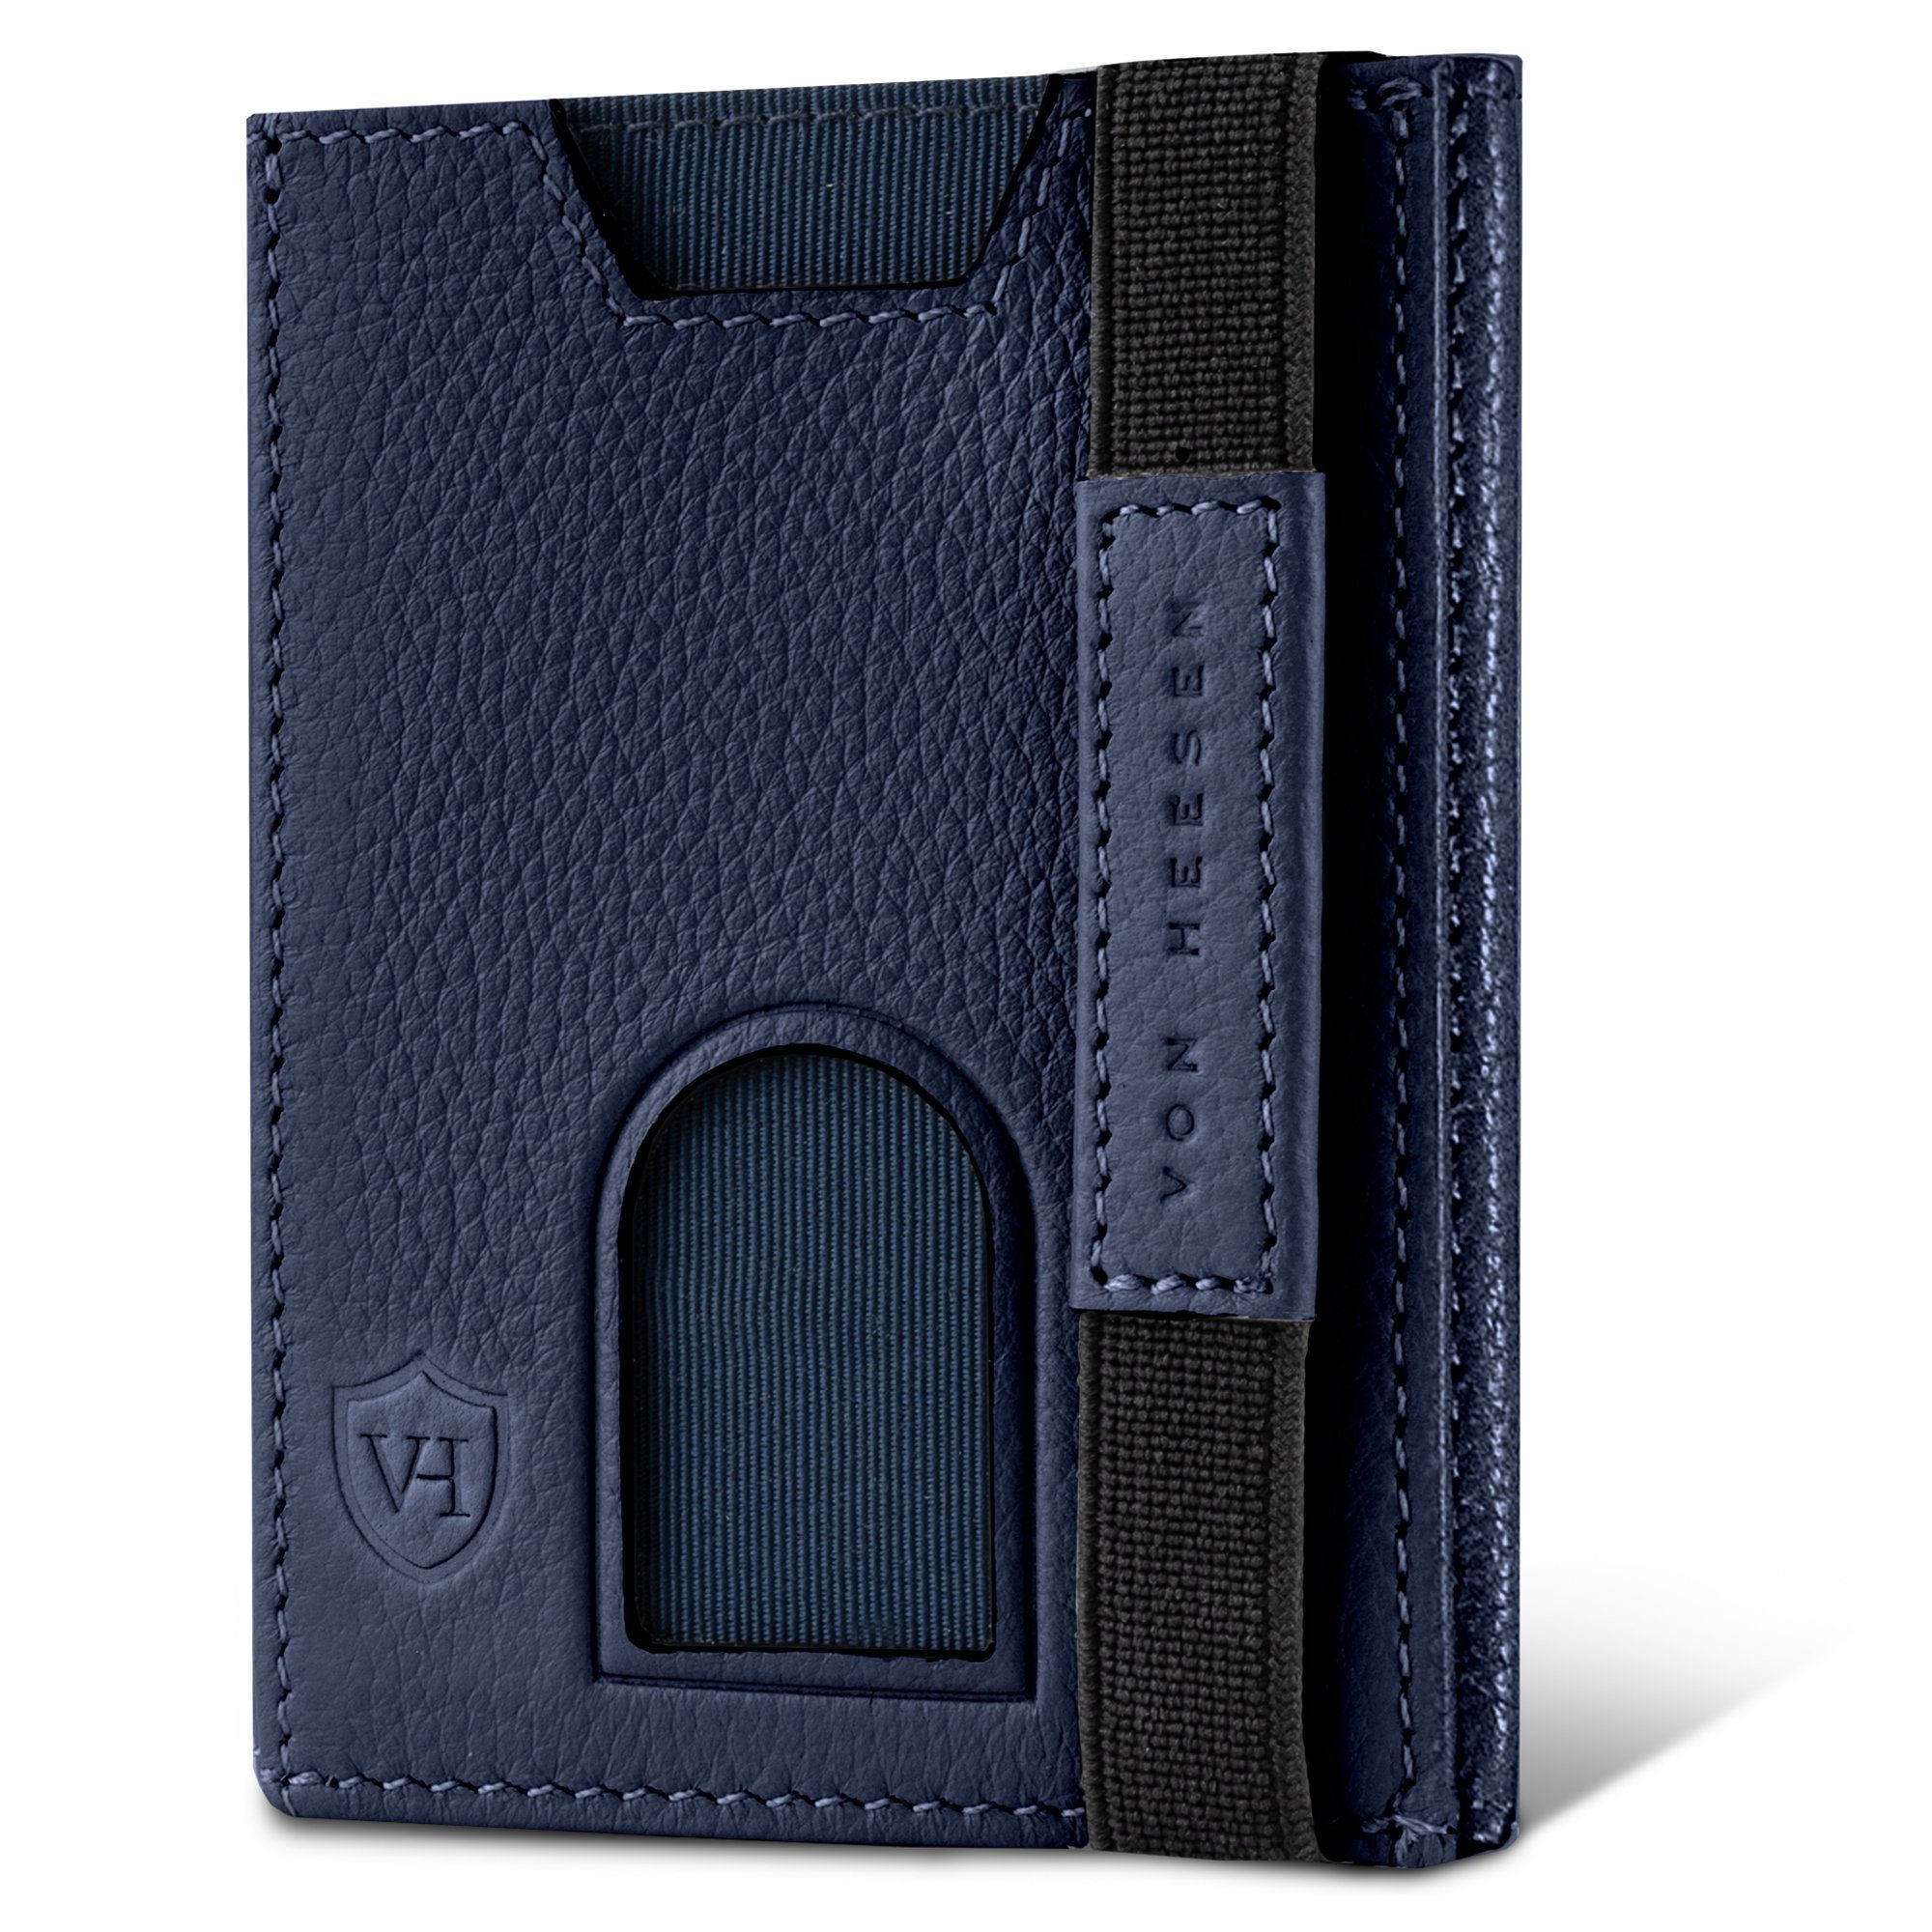 VON HEESEN Geldbörse Whizz Wallet mit 6 Kartenfächer, Slim Wallet Geldbeutel Portemonnaie inkl. RFID-Schutz & Geschenkbox Blau